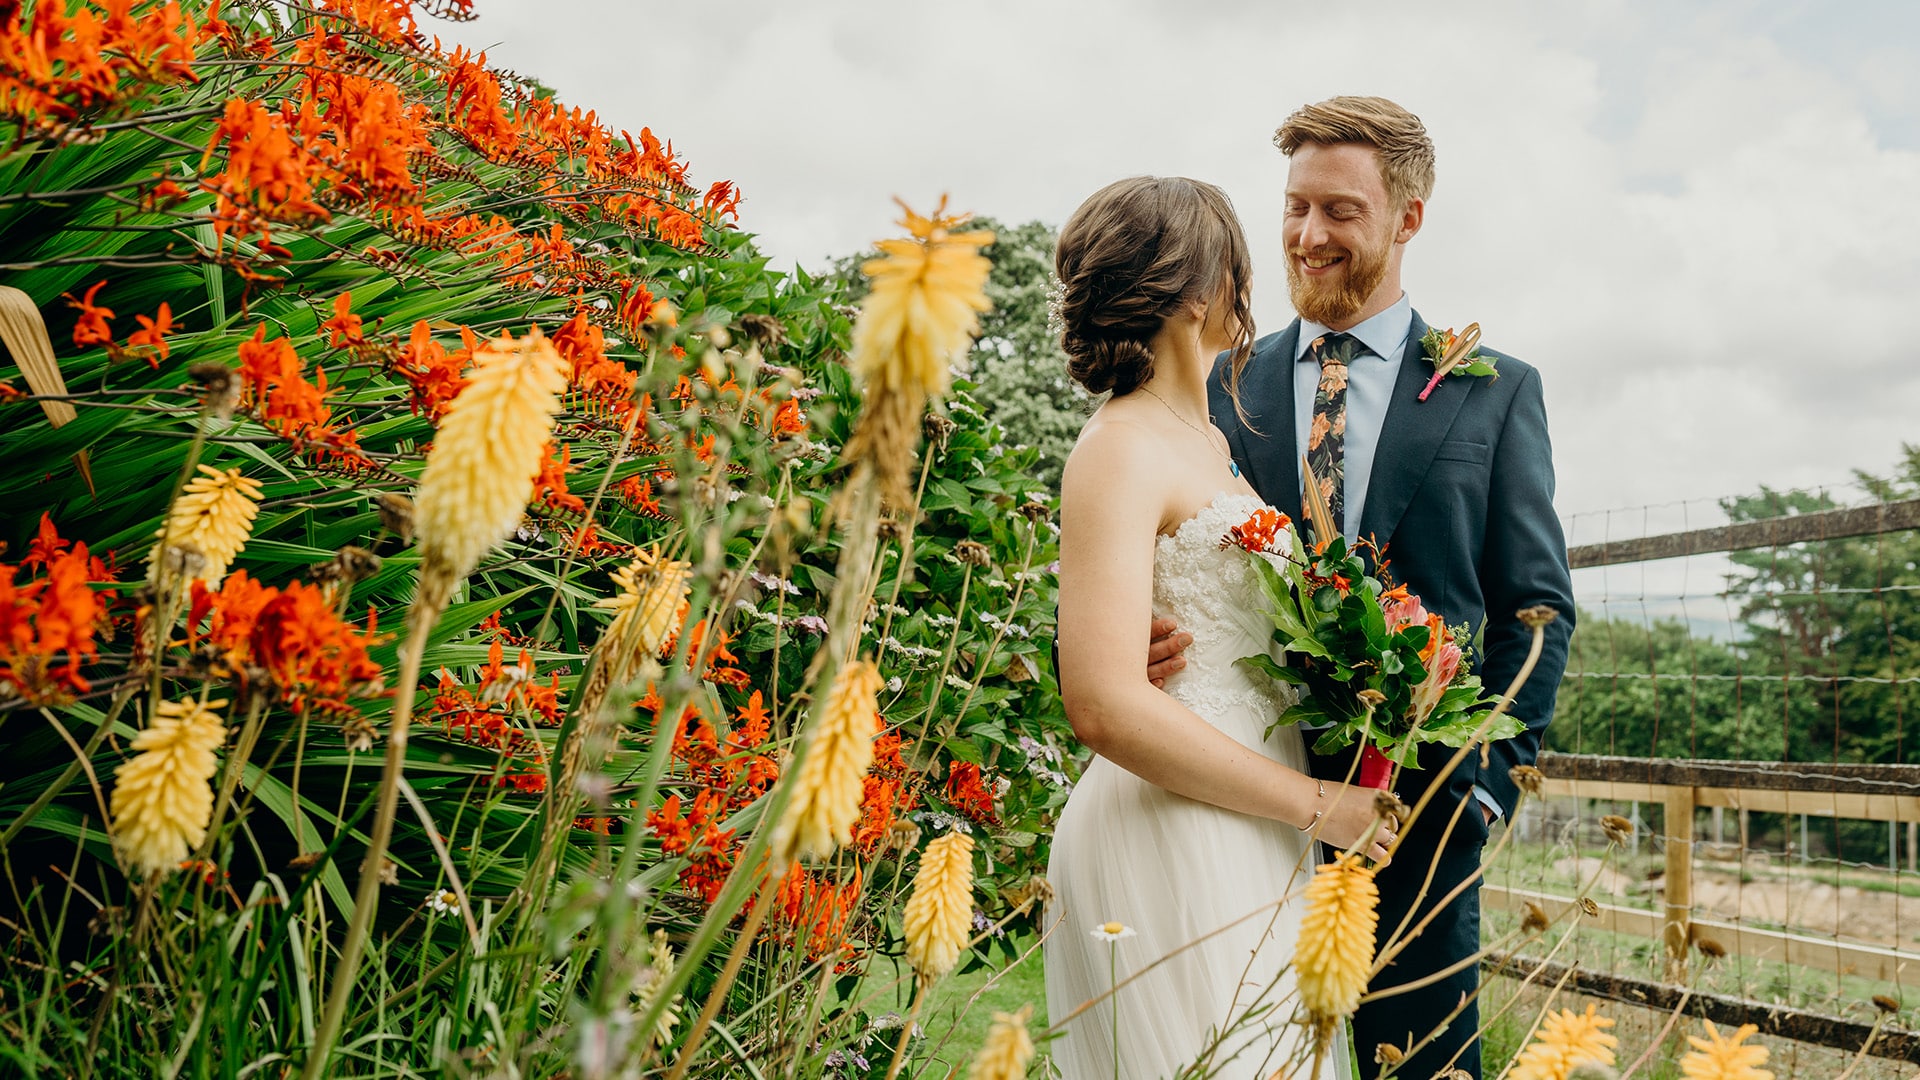 Capturing Memories: Zoo Wedding Photography in Devon